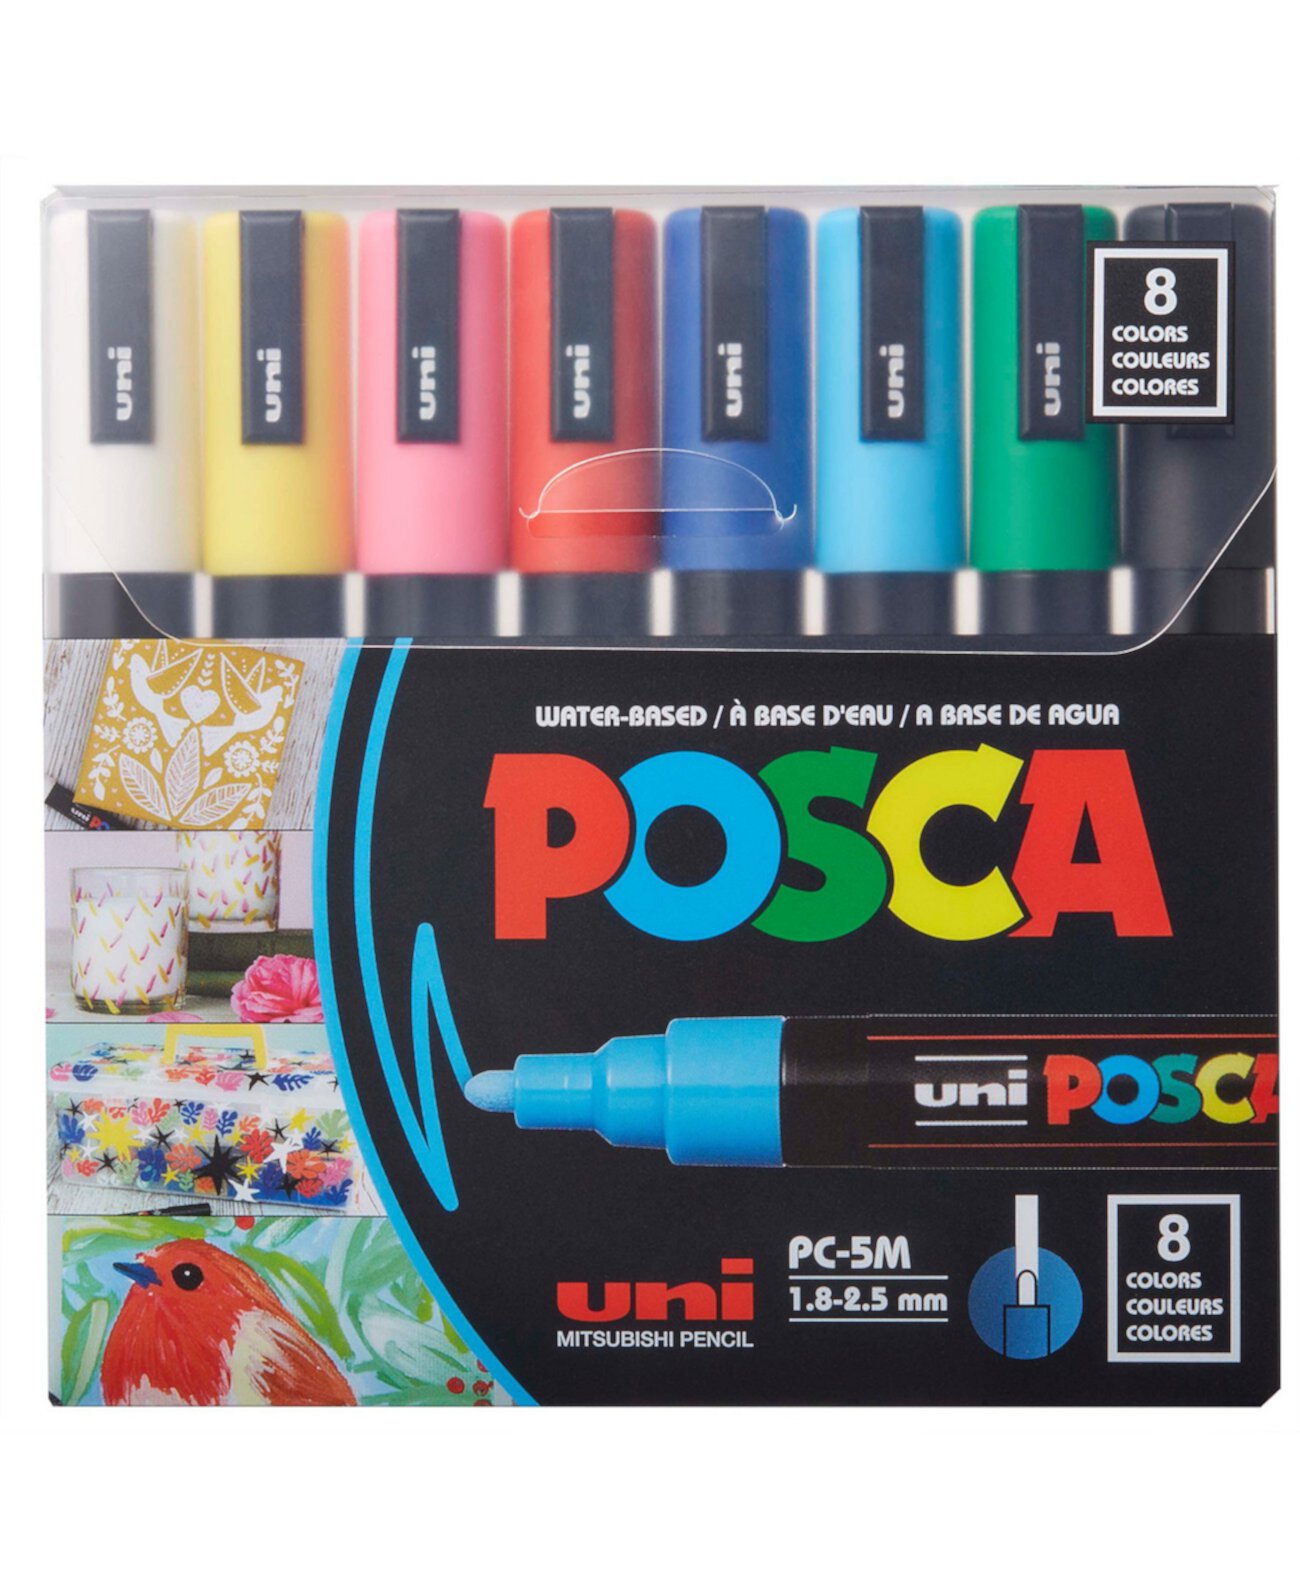 Набор 8-цветных маркеров, Pc-5M Medium POSCA